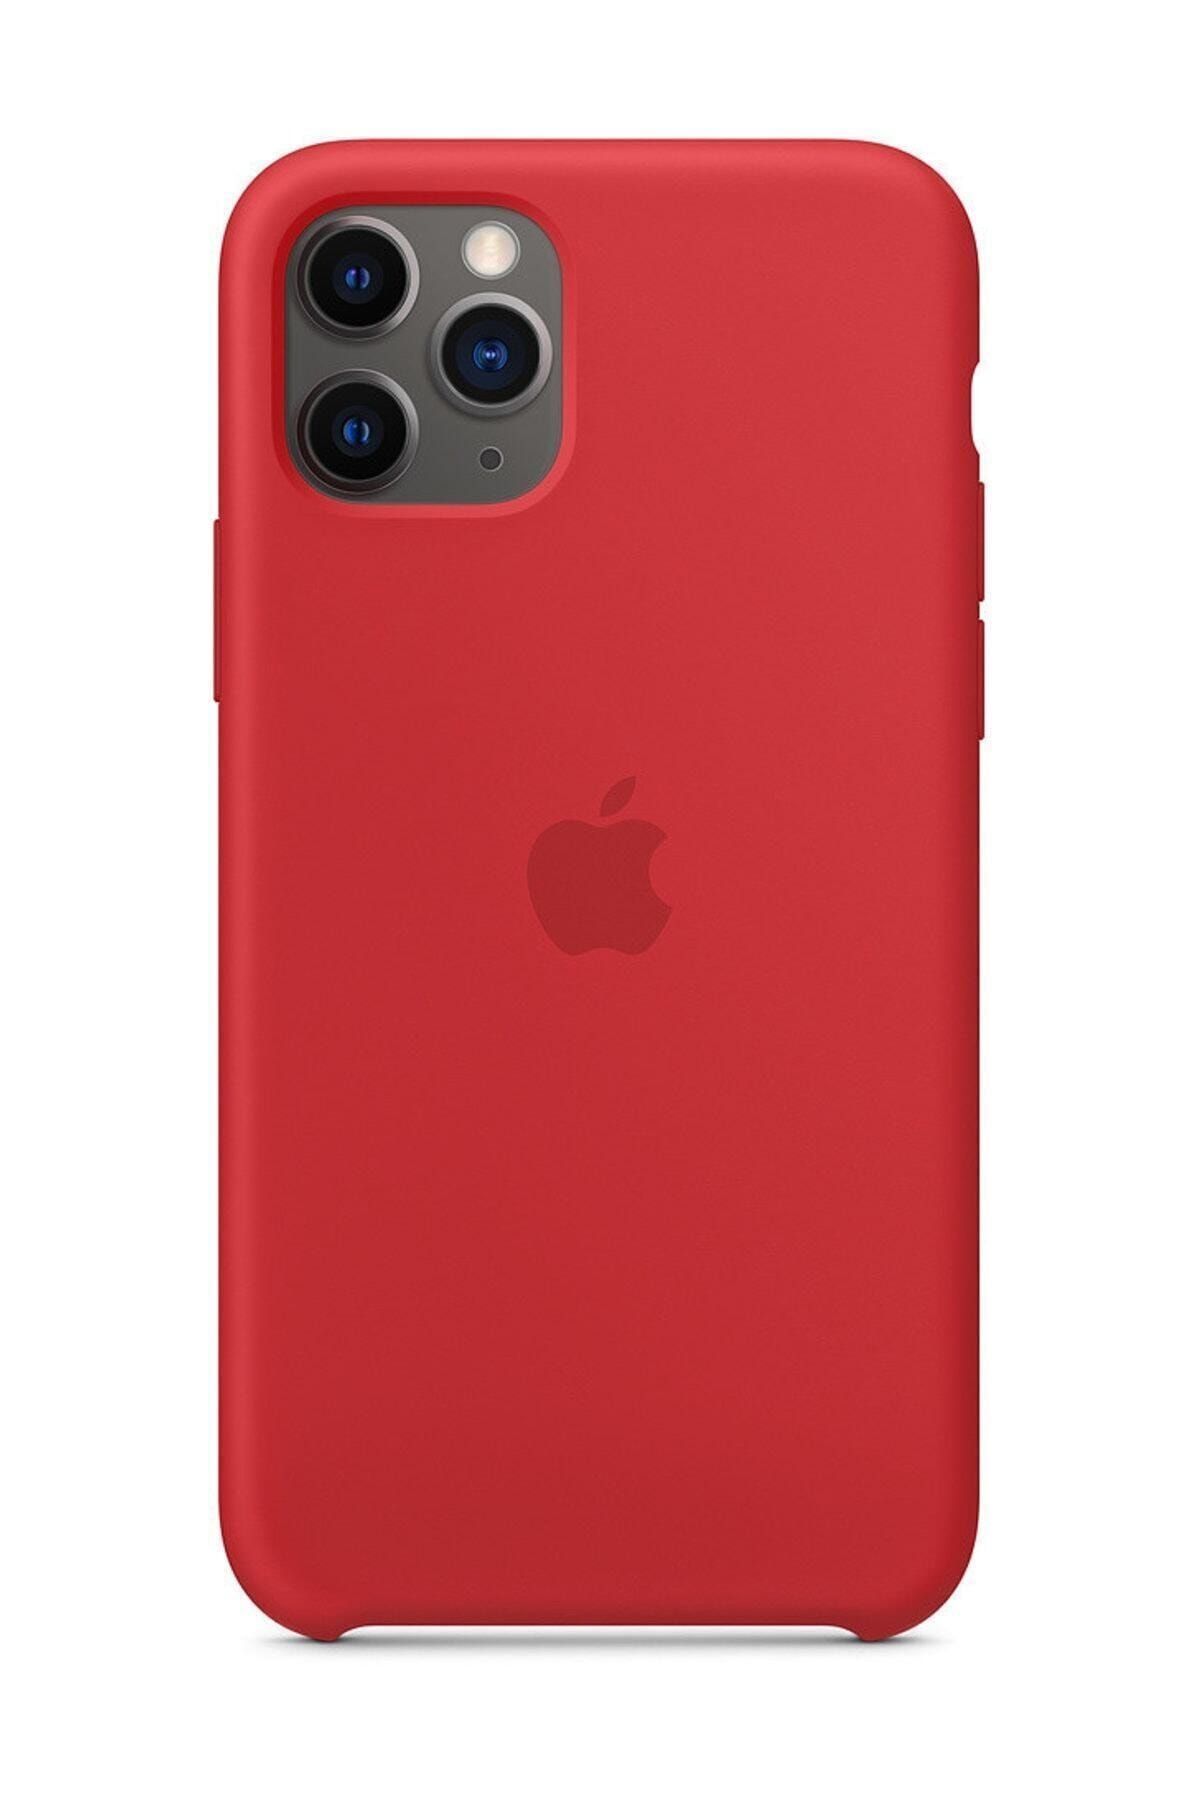 Telefon Aksesuarları Iphone 11 Silikon Kılıf-mwvu2zm/a - Ithalatçı Garantili - Kırmızı Invrtn11-3